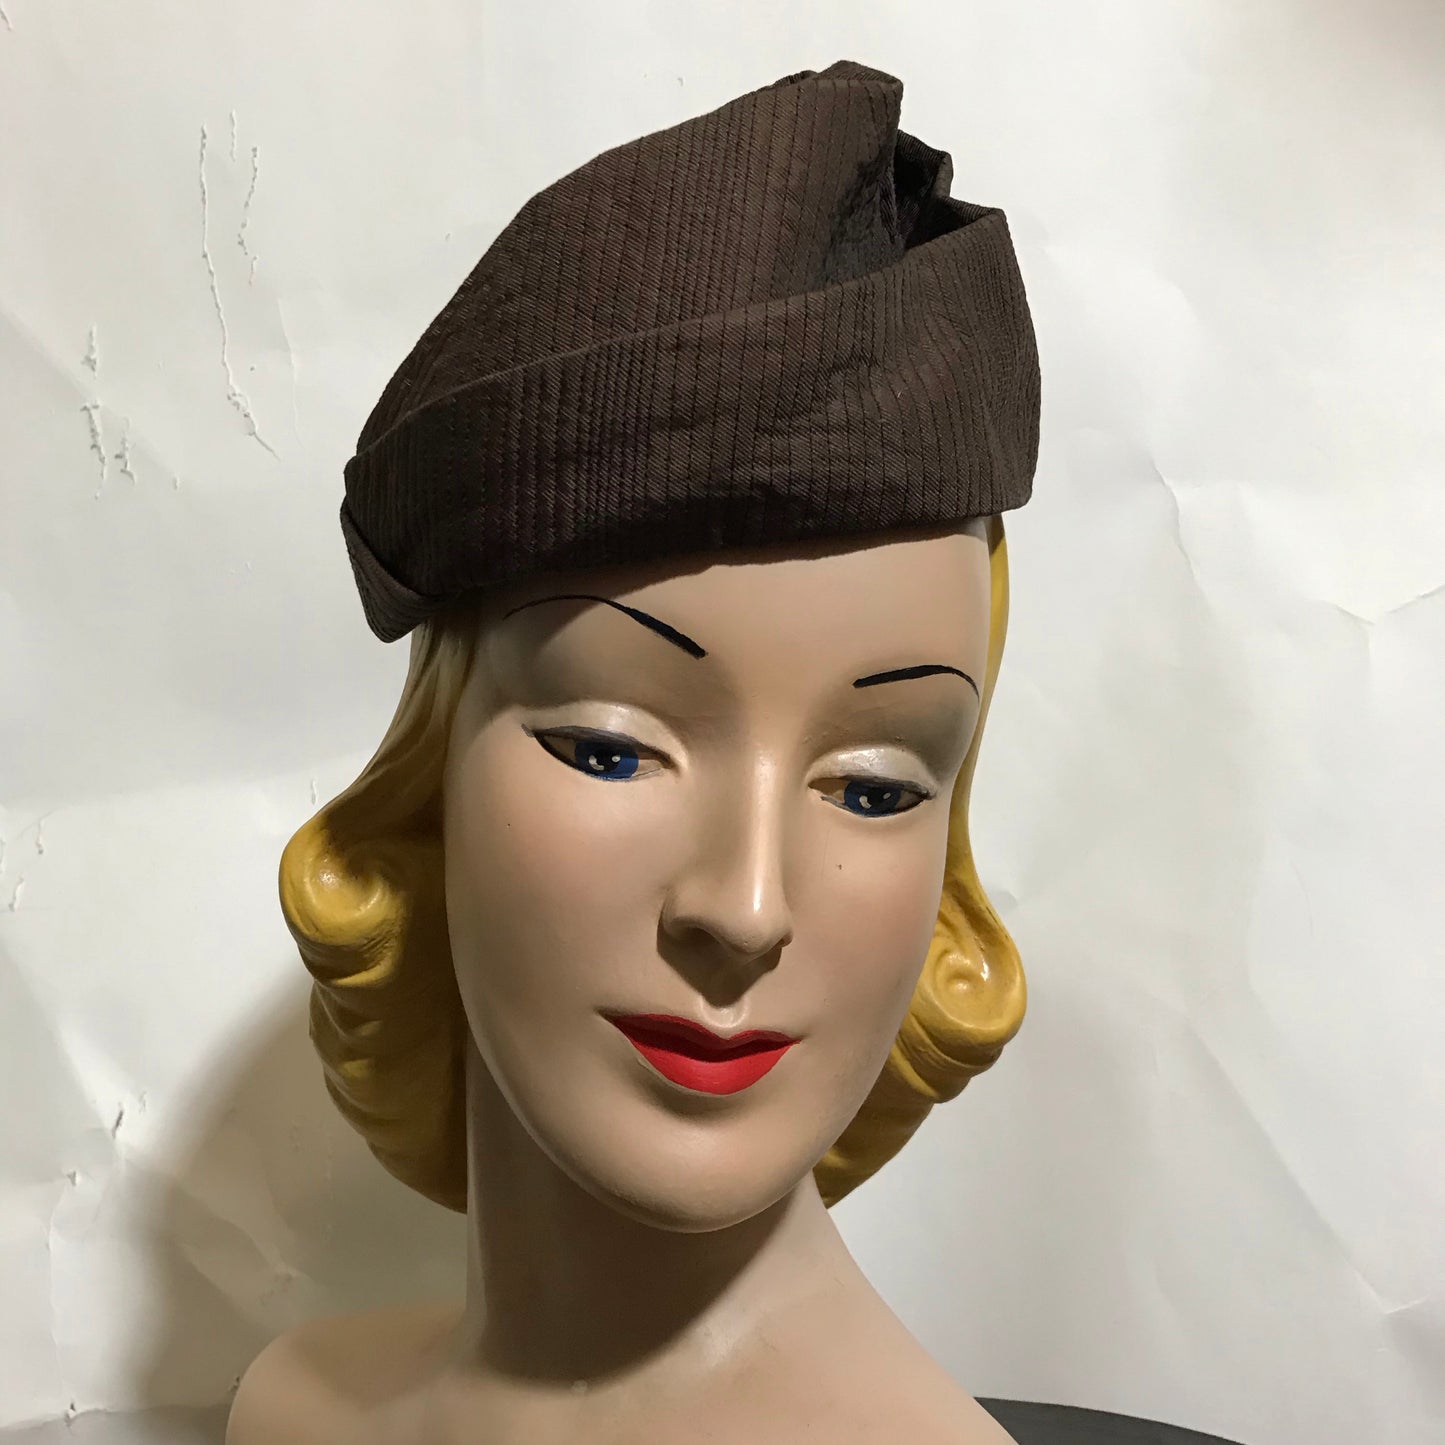 Cocoa Silk Topstiched Origami Folded Hat circa 1960s